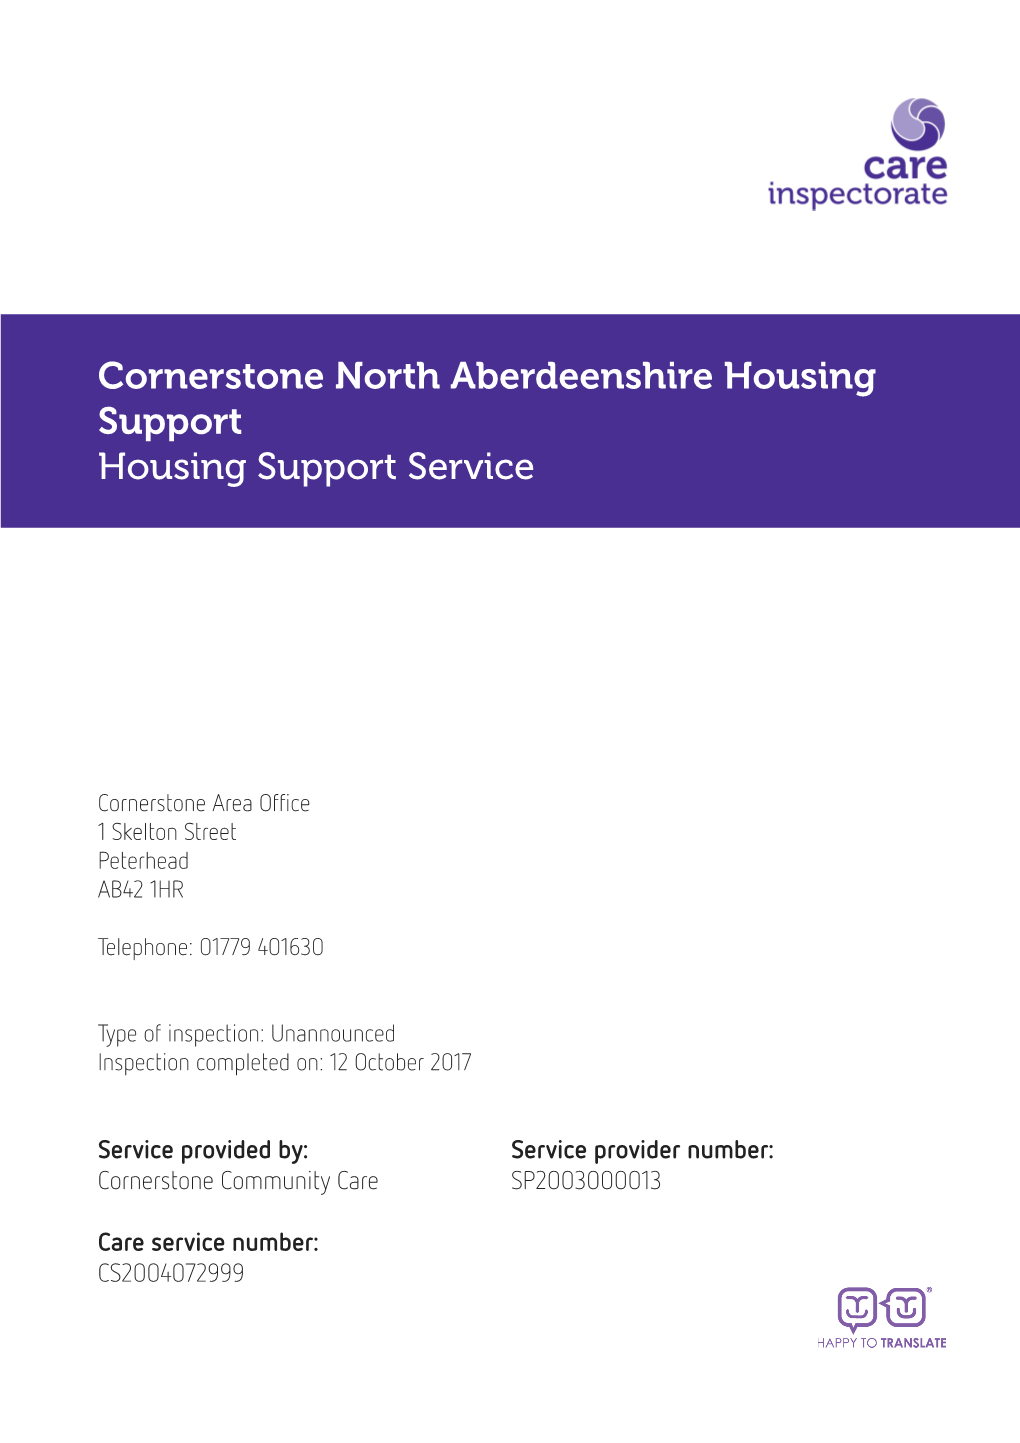 Cornerstone North Aberdeenshire Housing Support Housing Support Service